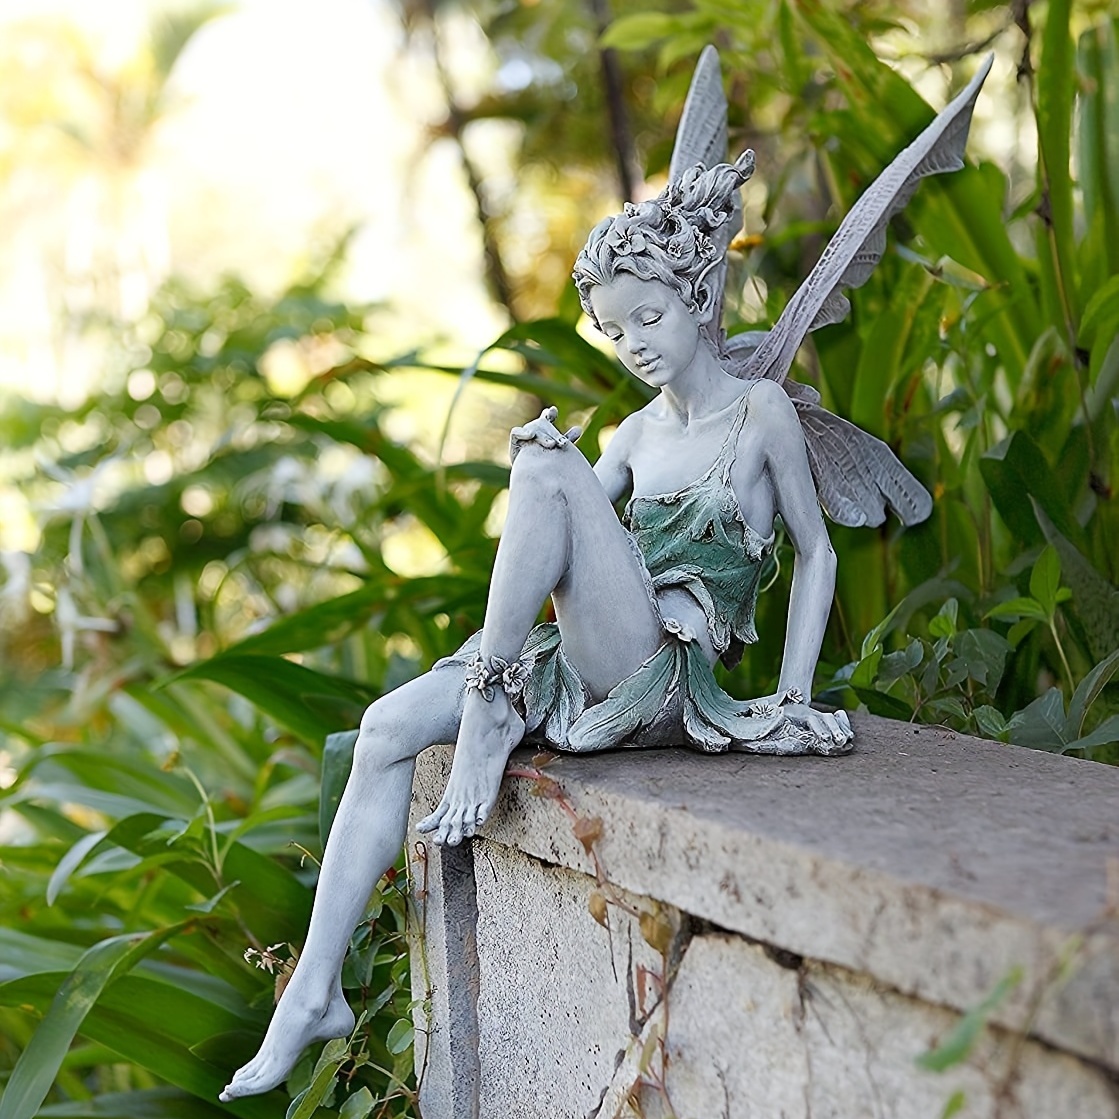 

1pc Flower Fairy Statue, Turek Sitting Genie Statue, Garden Courtyard Terrace Garden Landscape Decoration Ornament